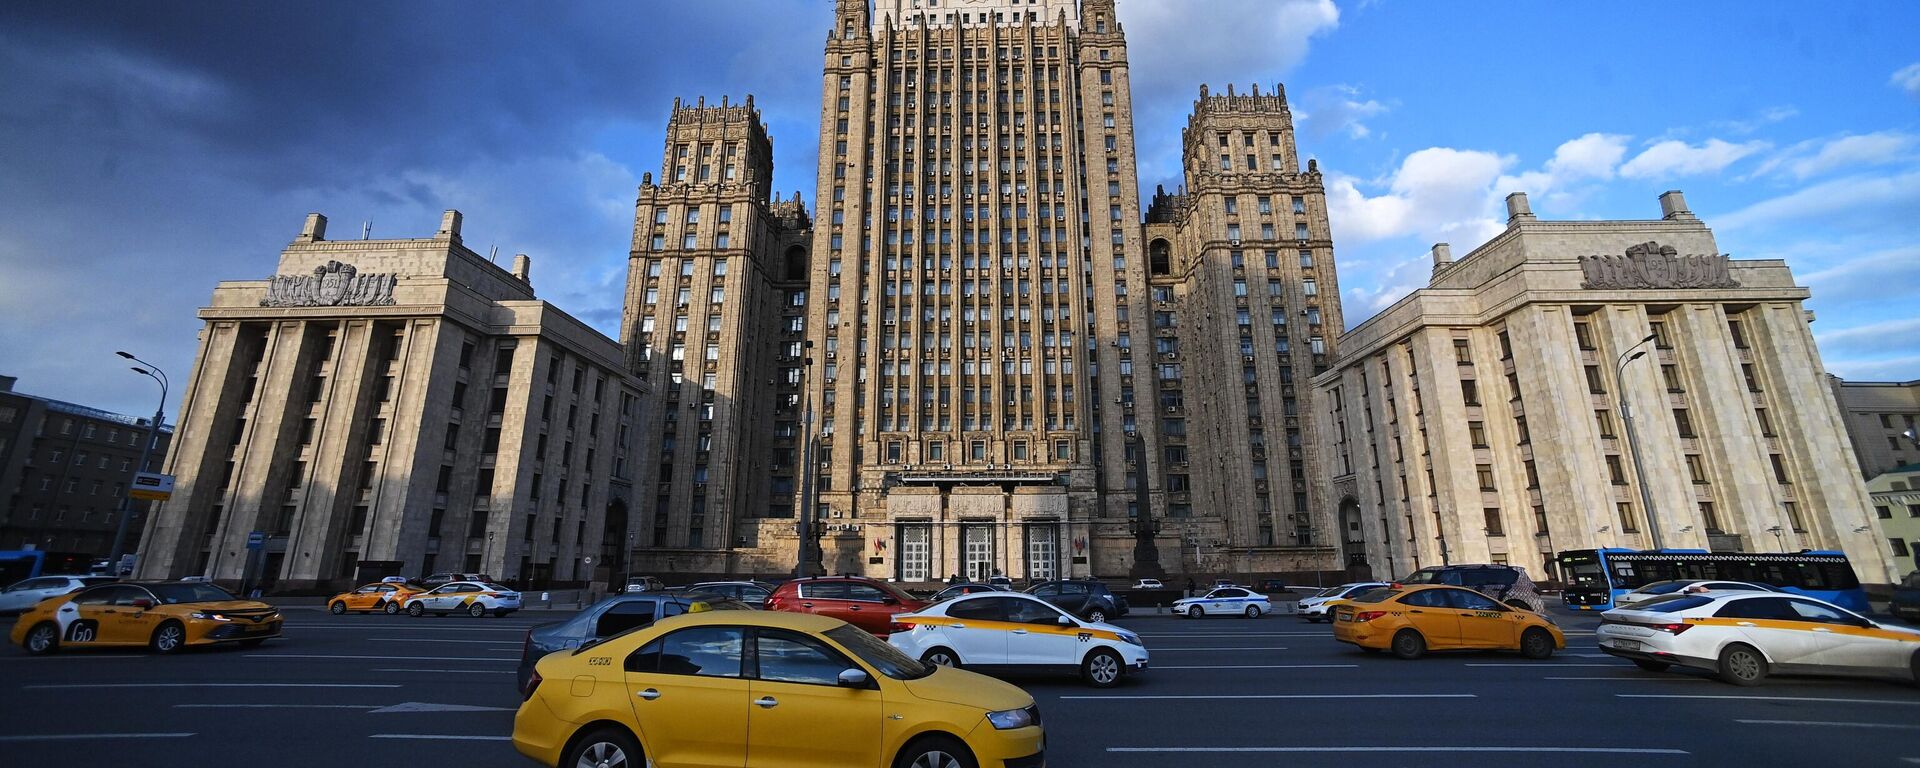 Rusya Federasyonu Dışişleri Bakanlığı'nın Moskova'daki binası. - Sputnik Türkiye, 1920, 07.05.2022